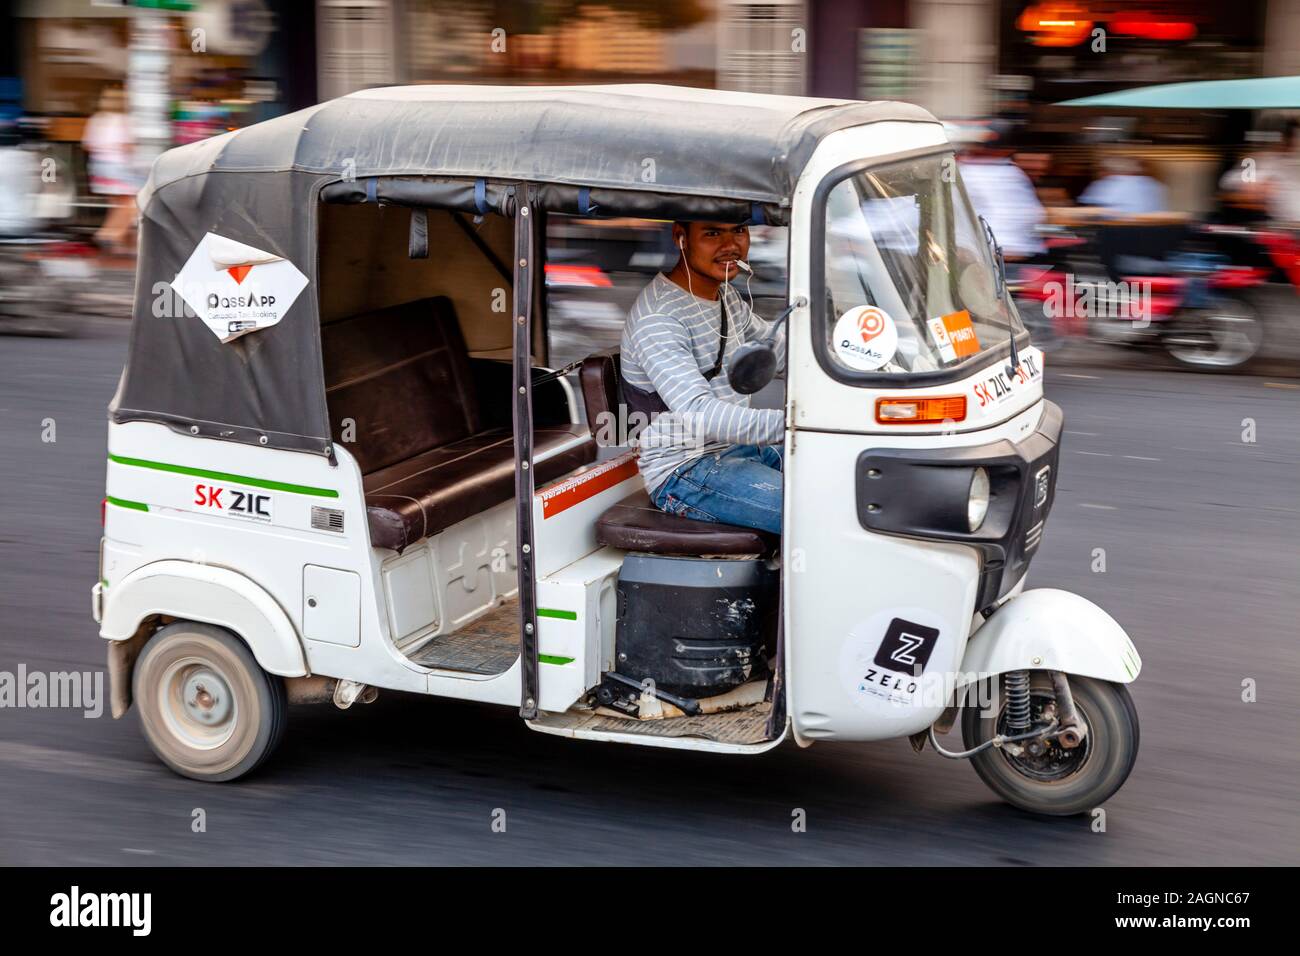 An Auto Rickshaw (Motorcycle) Taxi, Phnom Penh, Cambodia. Stock Photo